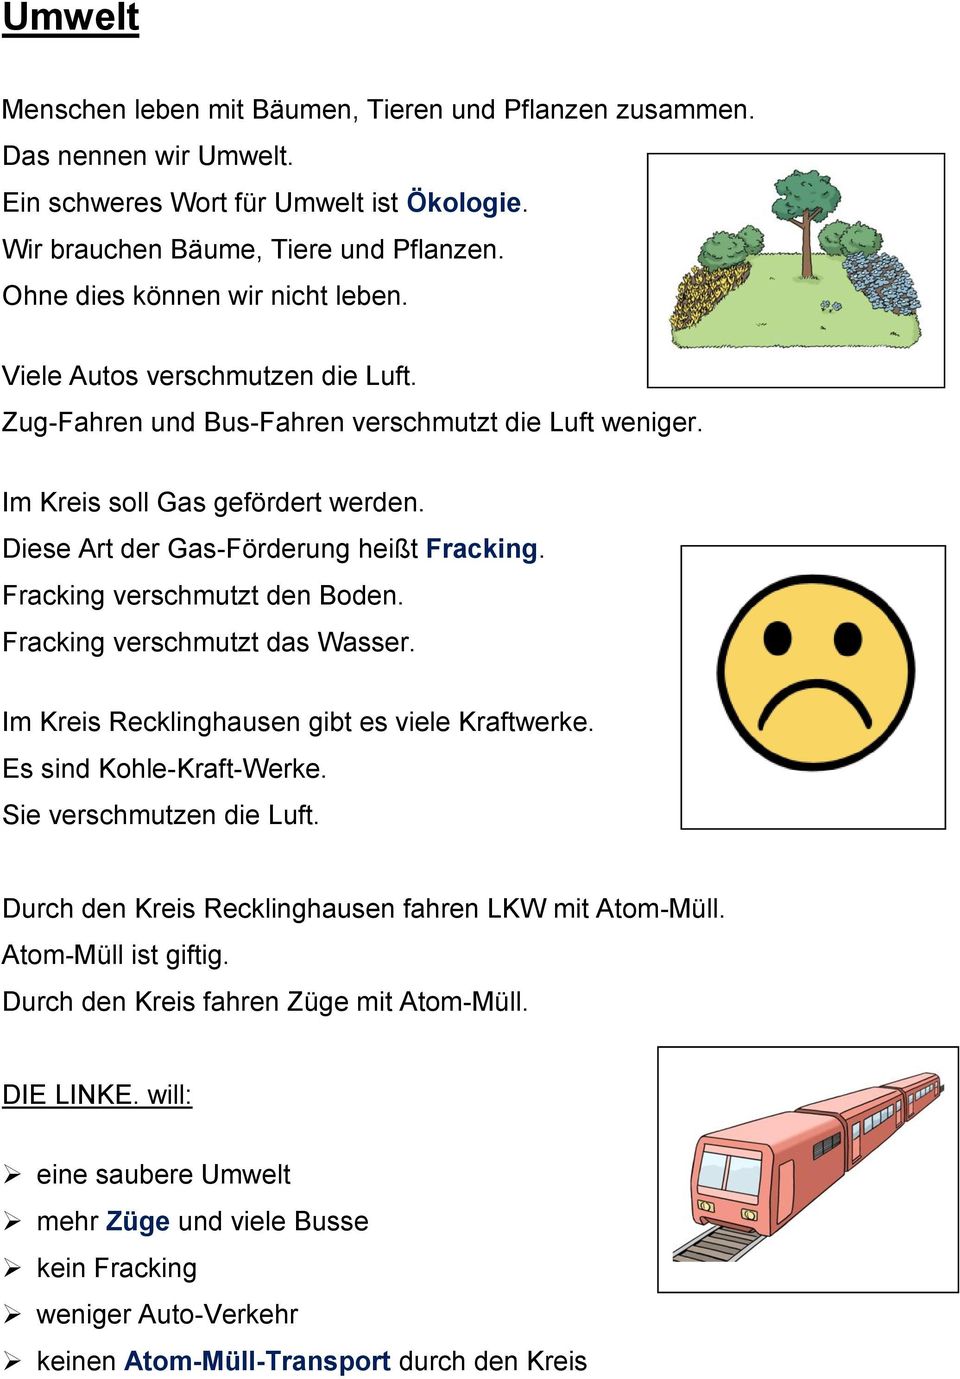 Diese Art der Gas-Förderung heißt Fracking. Fracking verschmutzt den Boden. Fracking verschmutzt das Wasser. Im Kreis Recklinghausen gibt es viele Kraftwerke. Es sind Kohle-Kraft-Werke.